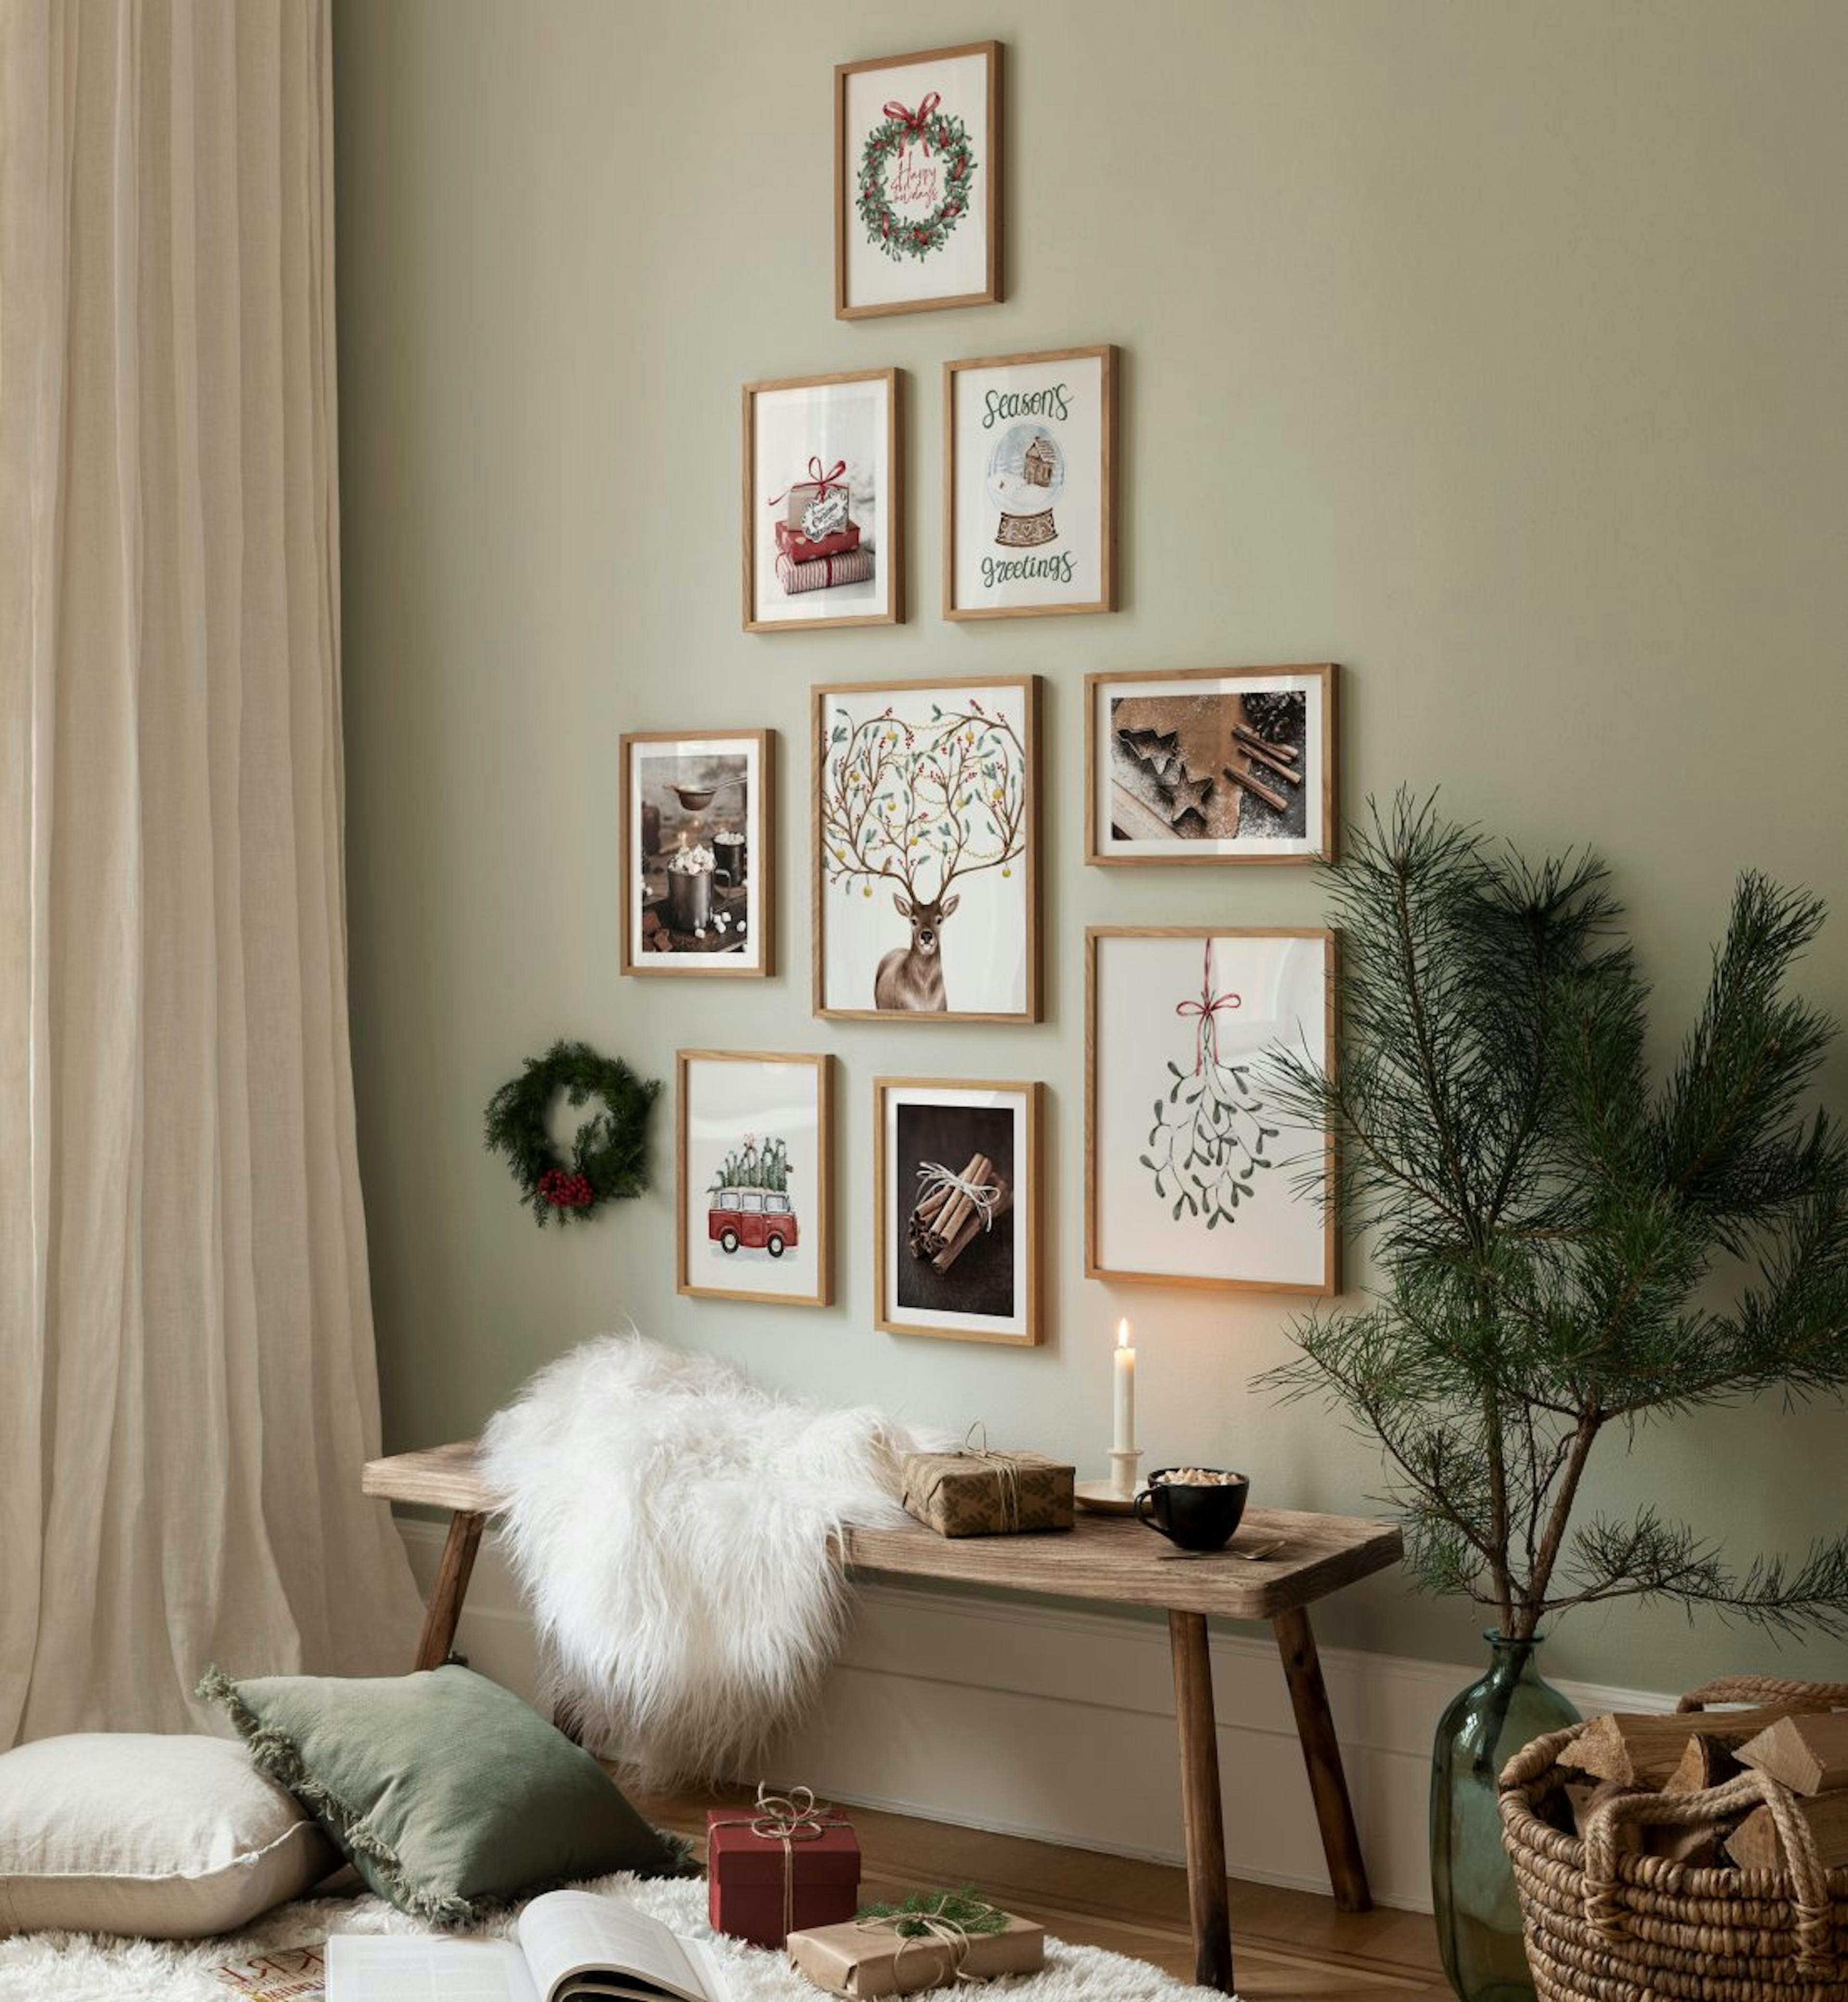 Julebilleder og illustrationer til stuen eller gangen